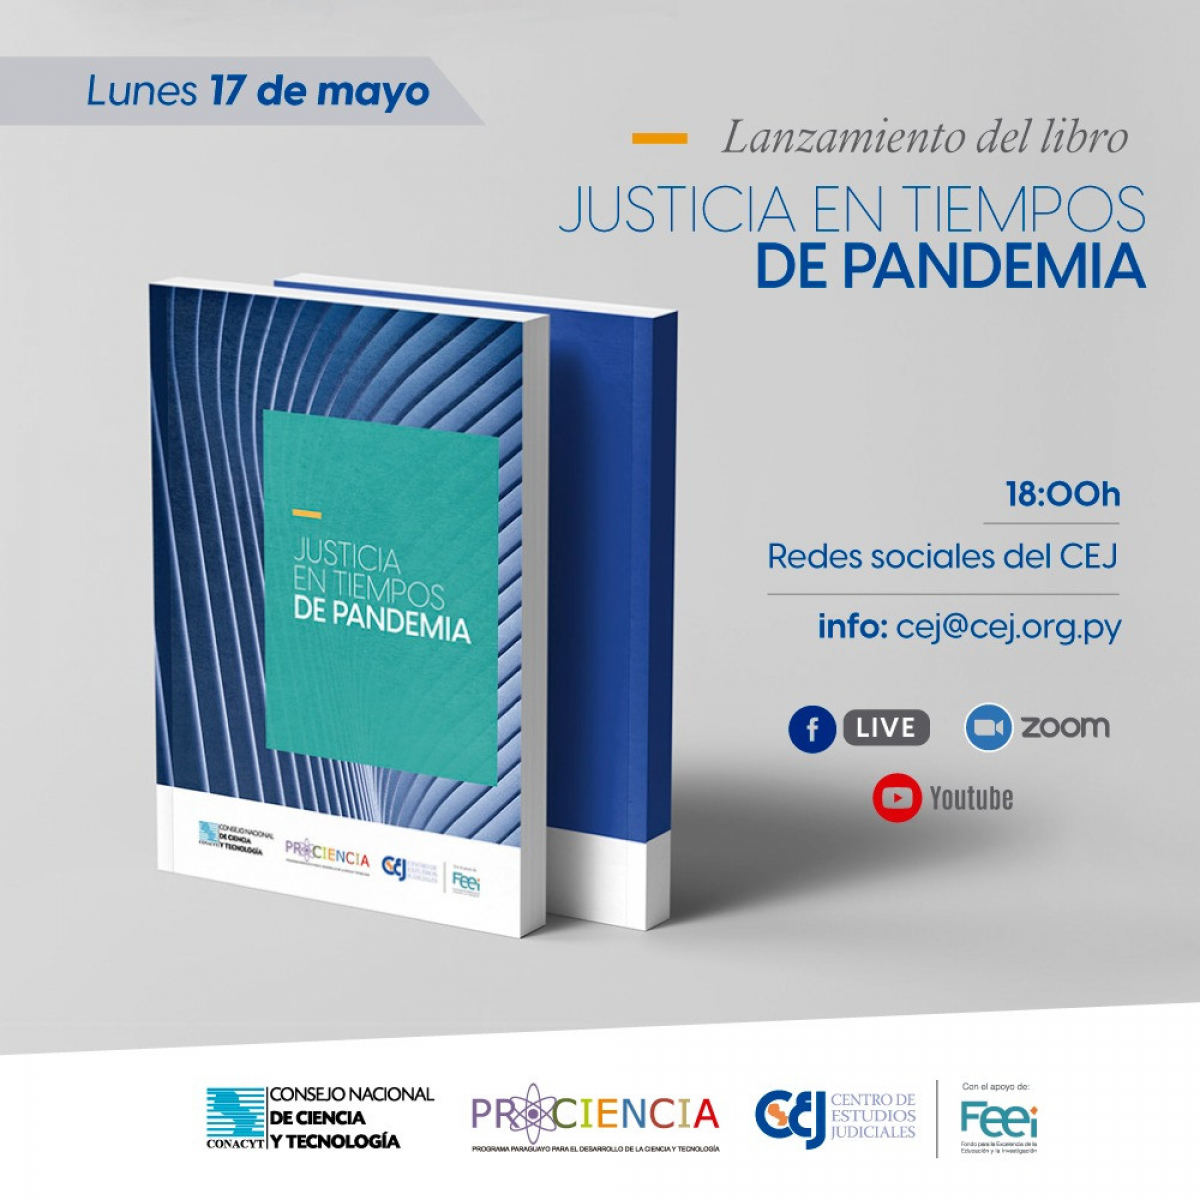 El CEJ realizará el lanzamiento del libro “Justicia en tiempos de pandemia”.